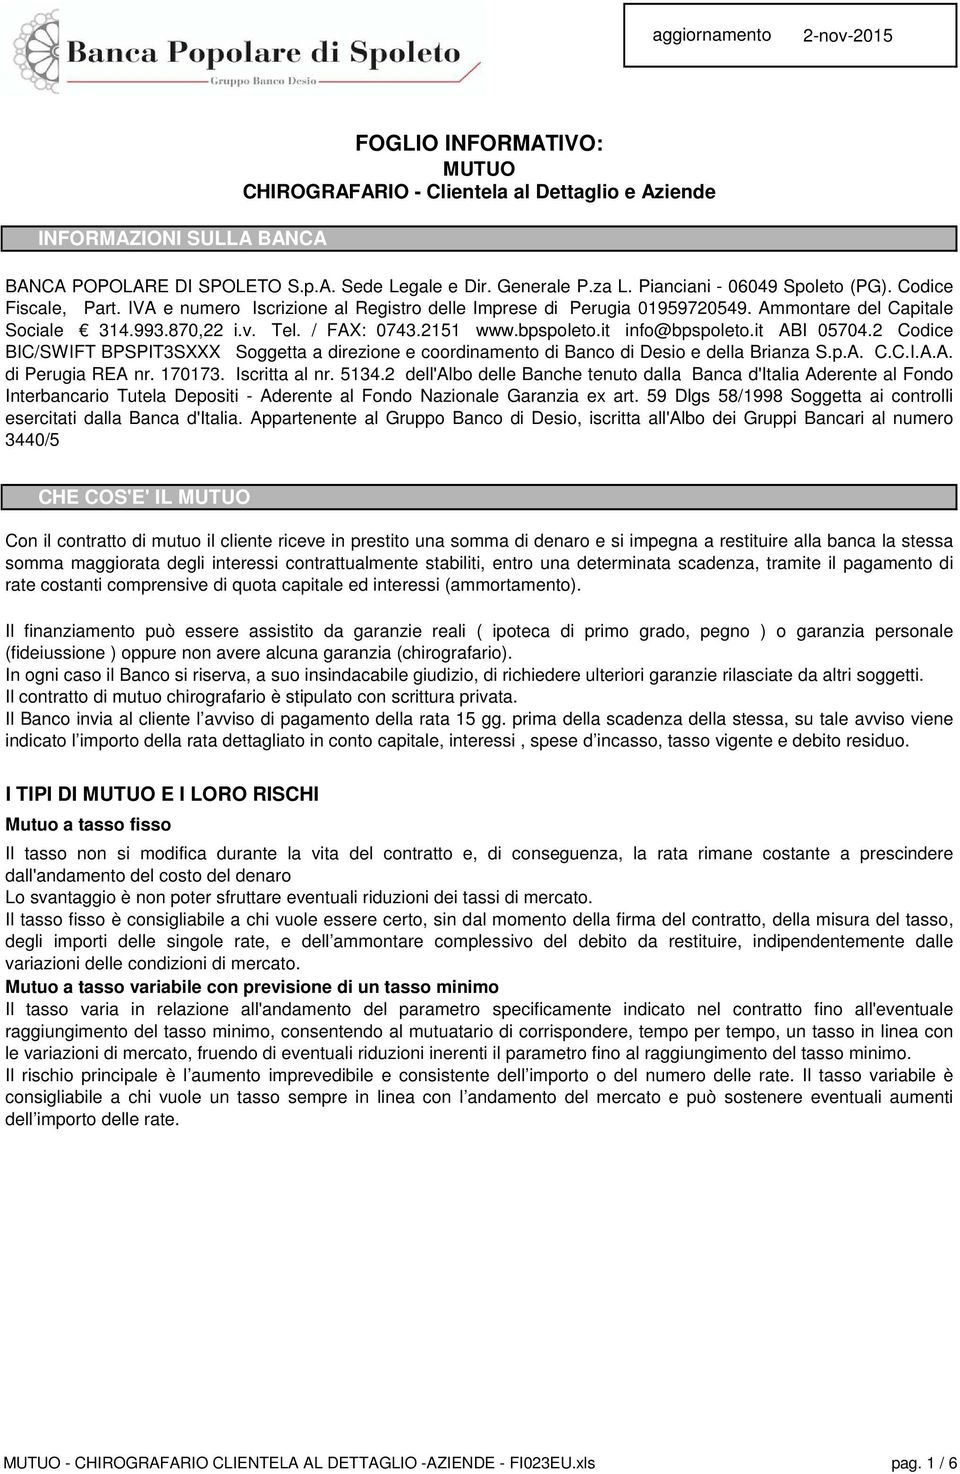 2151 www.bpspoleto.it info@bpspoleto.it ABI 05704.2 Codice BIC/SWIFT BPSPIT3SXXX Soggetta a direzione e coordinamento di Banco di Desio e della Brianza S.p.A. C.C.I.A.A. di Perugia REA nr. 170173.